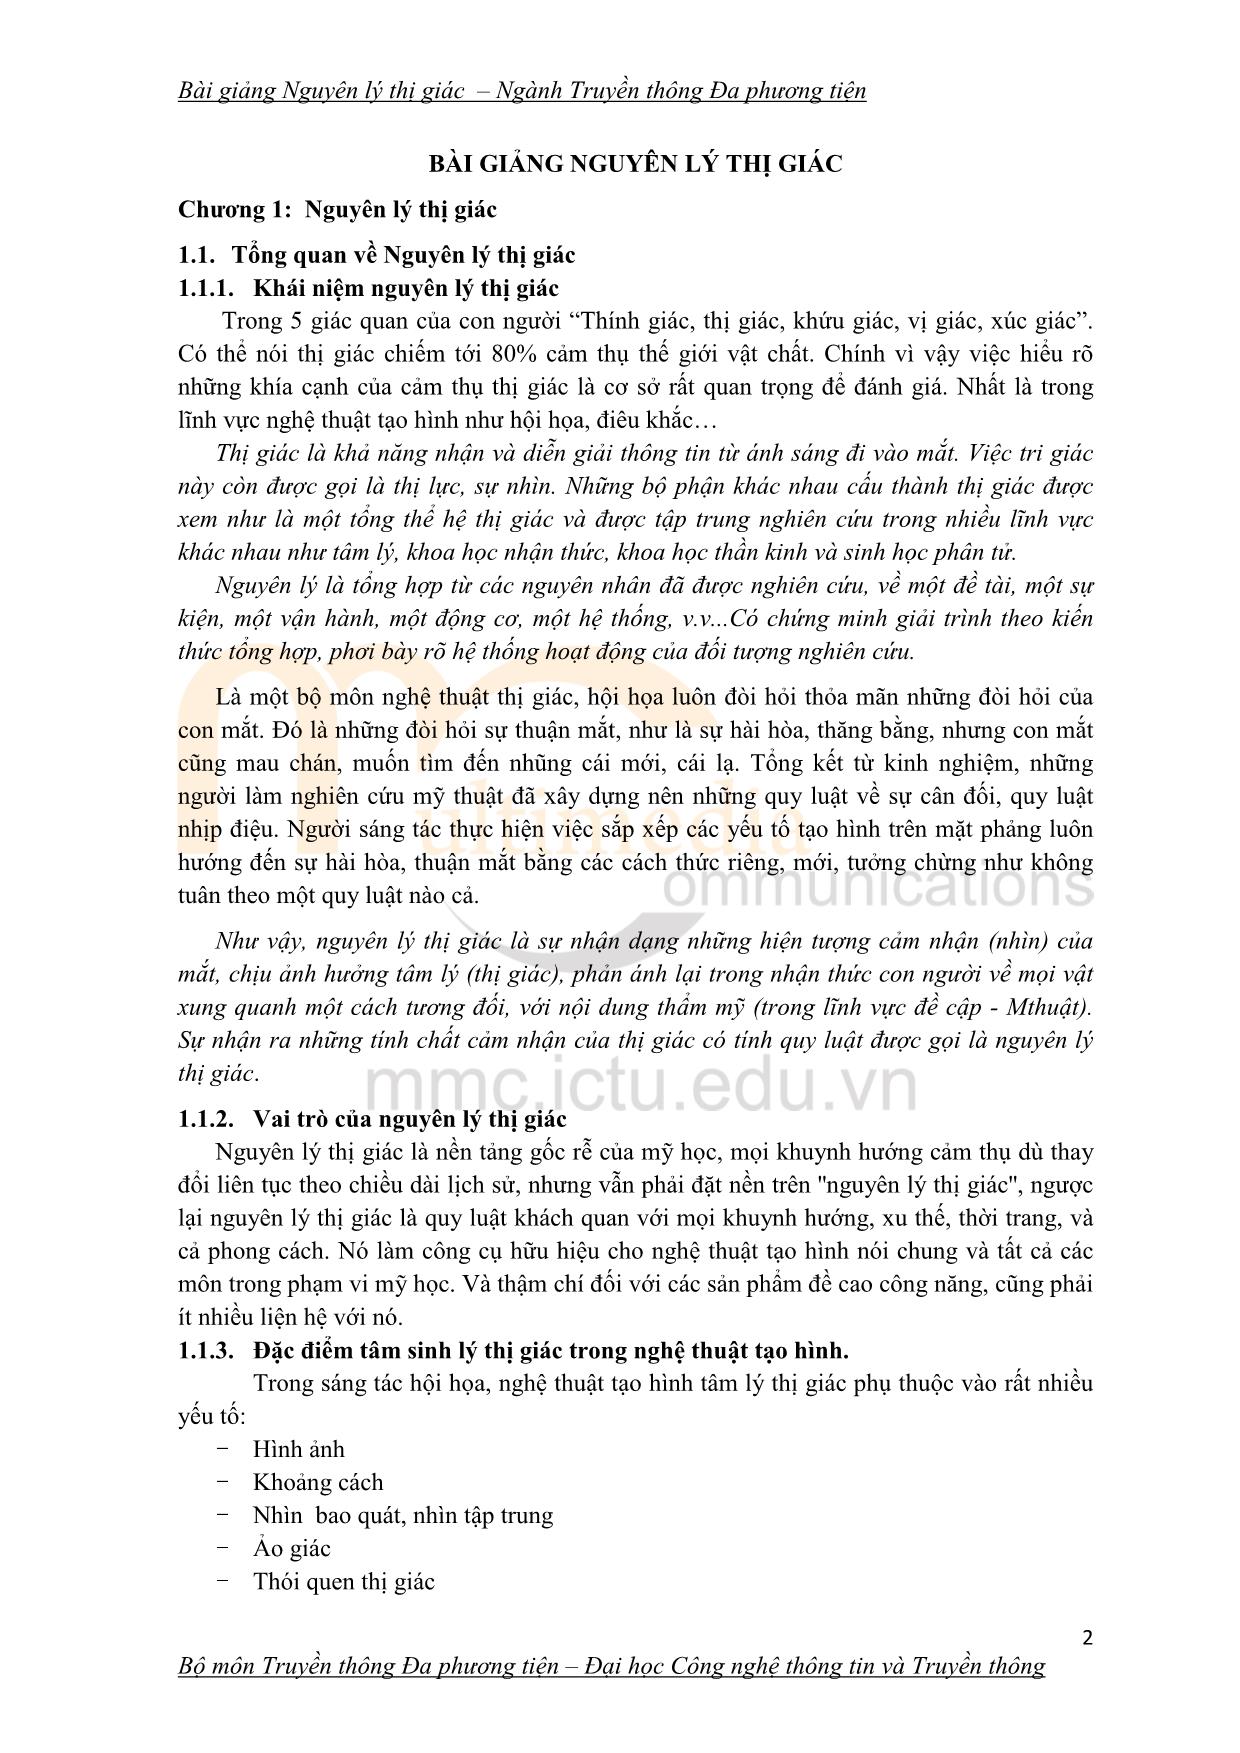 Giáo trình Nguyên lý thị giác (Phần 1) trang 2